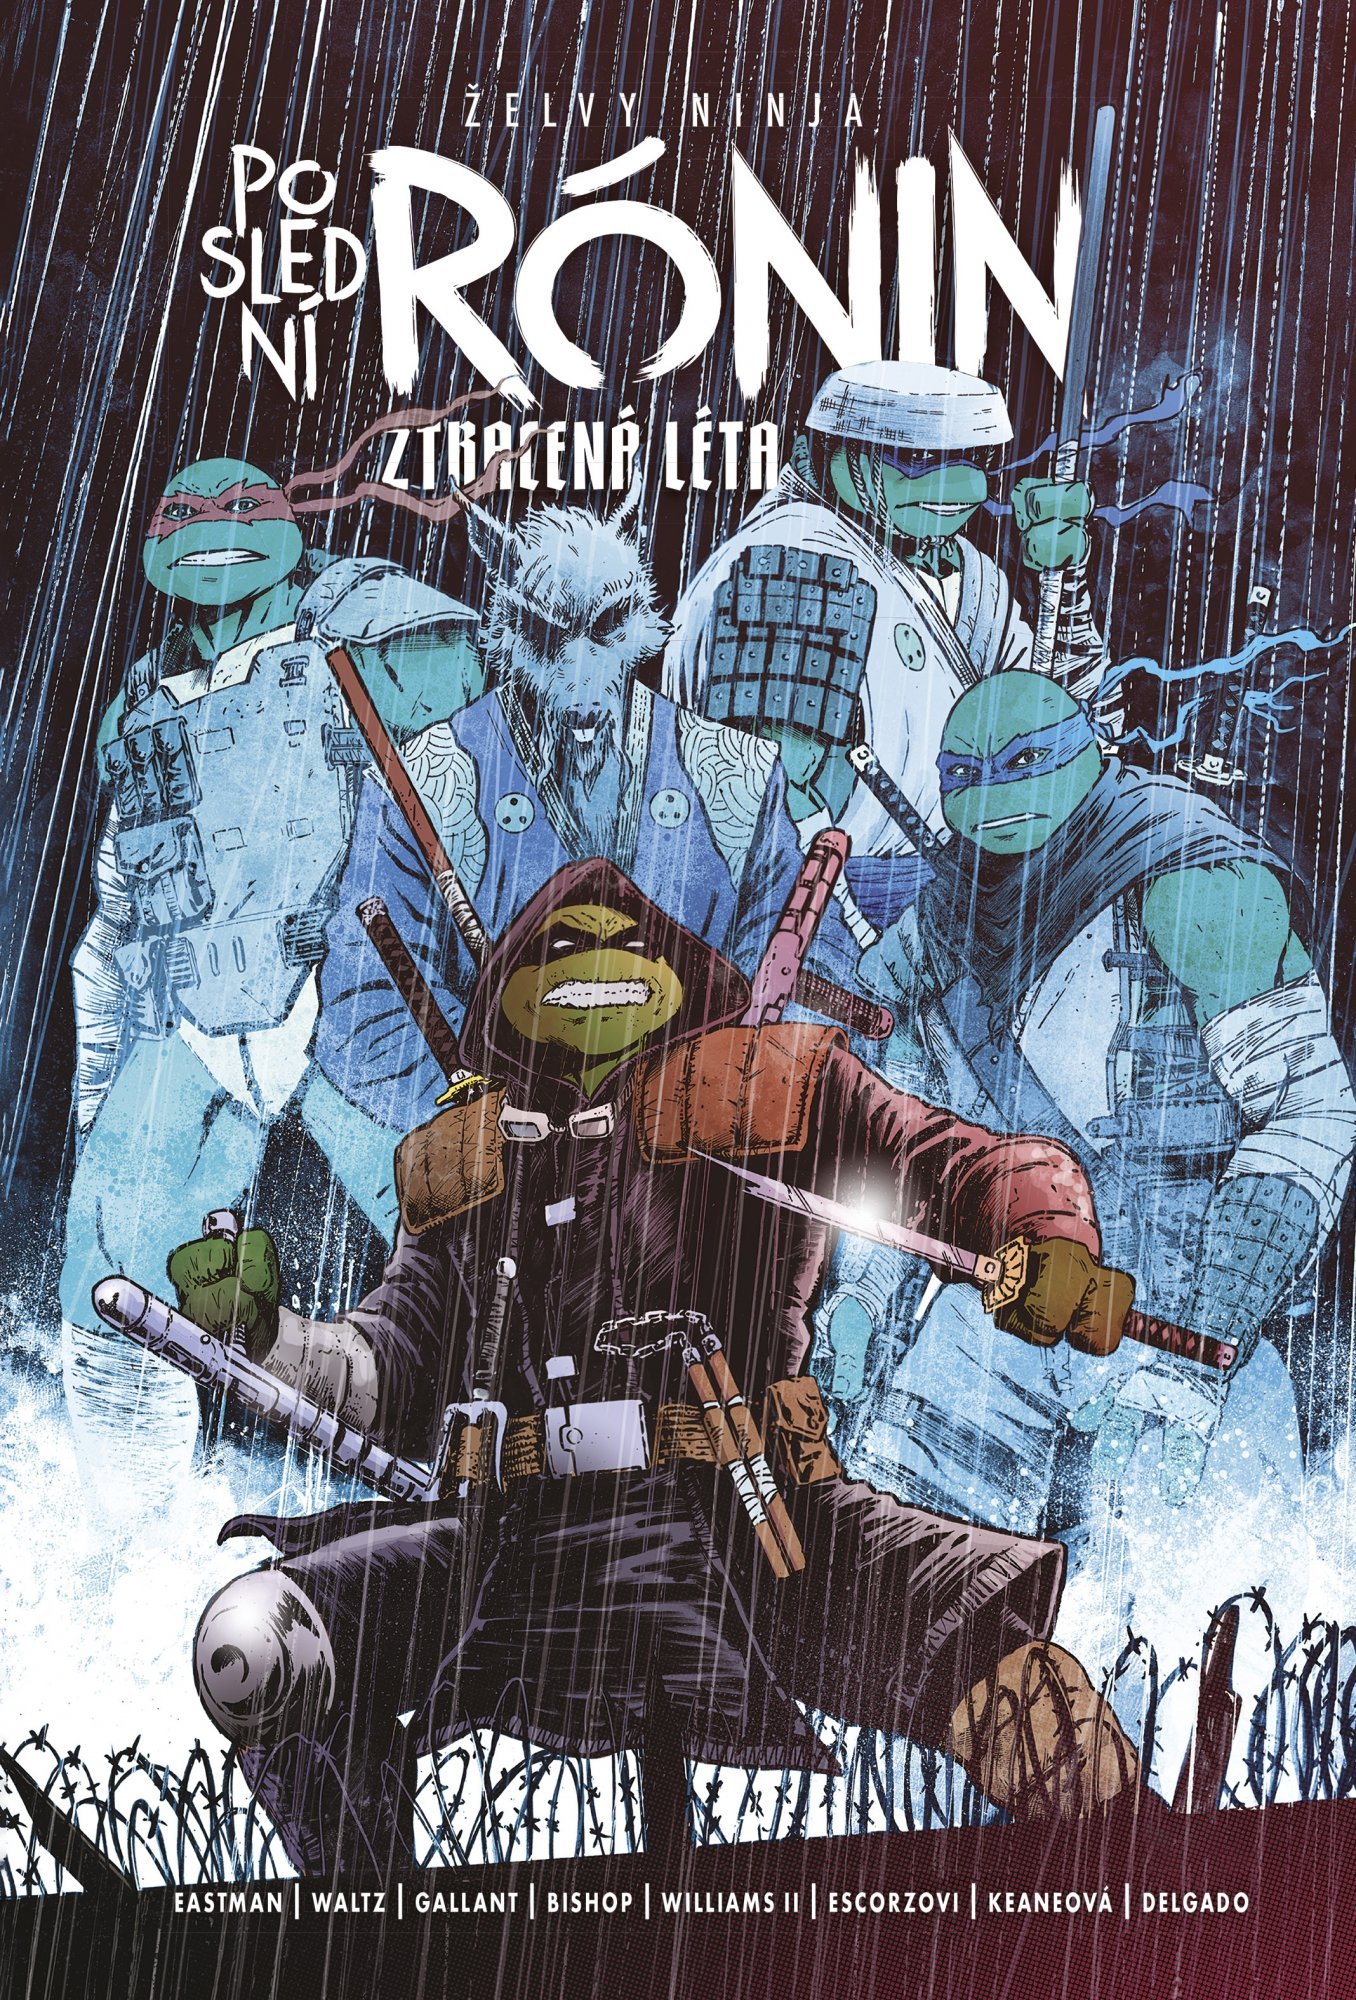 Želvy ninja: Poslední rónin – Ztracená léta - Kevin Eastman